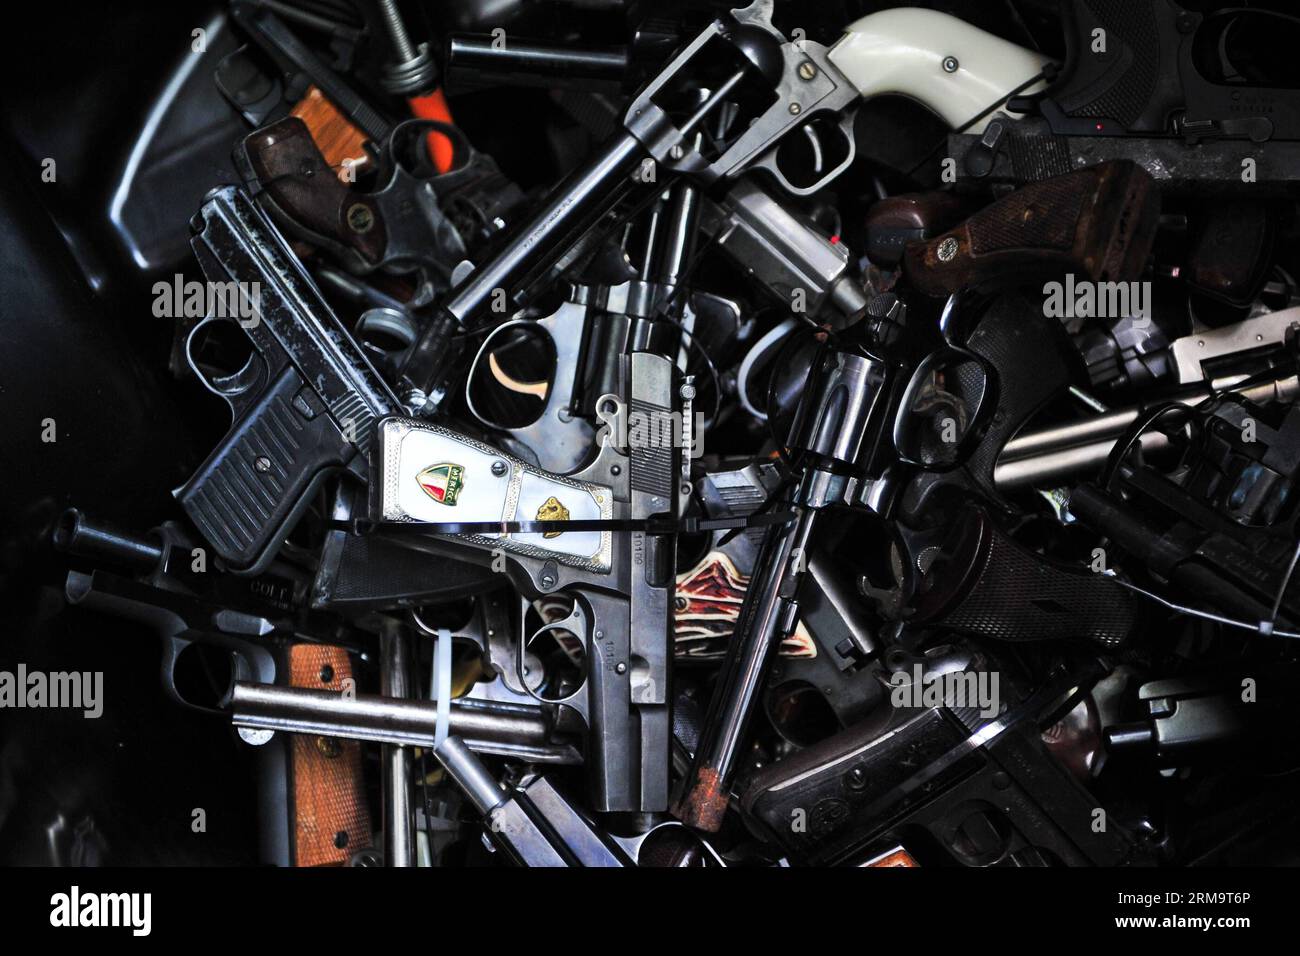 Übergebene Handfeuerwaffen werden beim Waffenrückkauf in Los Angeles, USA, am 31. Mai 2014 ausgestellt. Die Leute können ihre Schusswaffen an vier Orten in Los Angles gegen Geschenkgutscheine für Supermärkte eintauschen. Das City Wide Gun Buyback Program fand erstmals 2009 in Los Angles statt und wurde vom Bürgermeisteramt für Gangreduktion und Jugendentwicklung (GRYD) abgehalten, um die Anzahl der Geschütze auf den Straßen zu reduzieren. Mehr als 12.000 Geschütze wurden in den letzten fünf Jahren zurückgekauft und ausgestorben. (Xinhua/Zhang Chaoqun) (zjl) US-LOS ANGELES-GUN-RÜCKKAUFPROGRAMM PUBLICATIONxNOTxINxCHN gab Handg ab Stockfoto